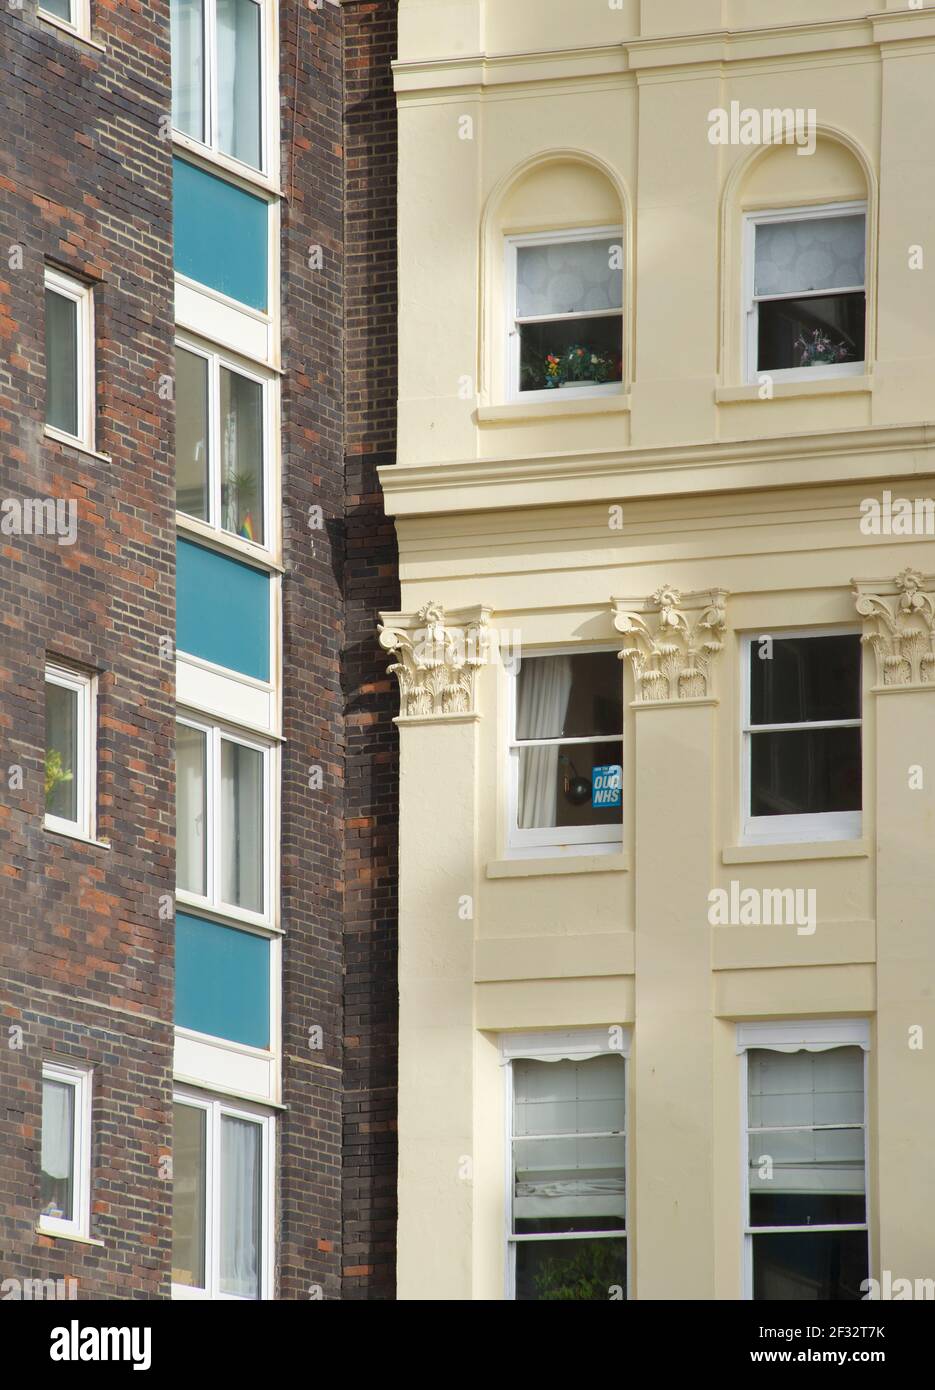 Dettaglio architettonico dell'architettura della Regency di Burleigh Court in Cavendish Place (a destra) e della moderna Casa Cavendish (a sinistra). Jutapositions di vecchio e di nuovo. Brighton, Inghilterra, Regno Unito. Foto Stock